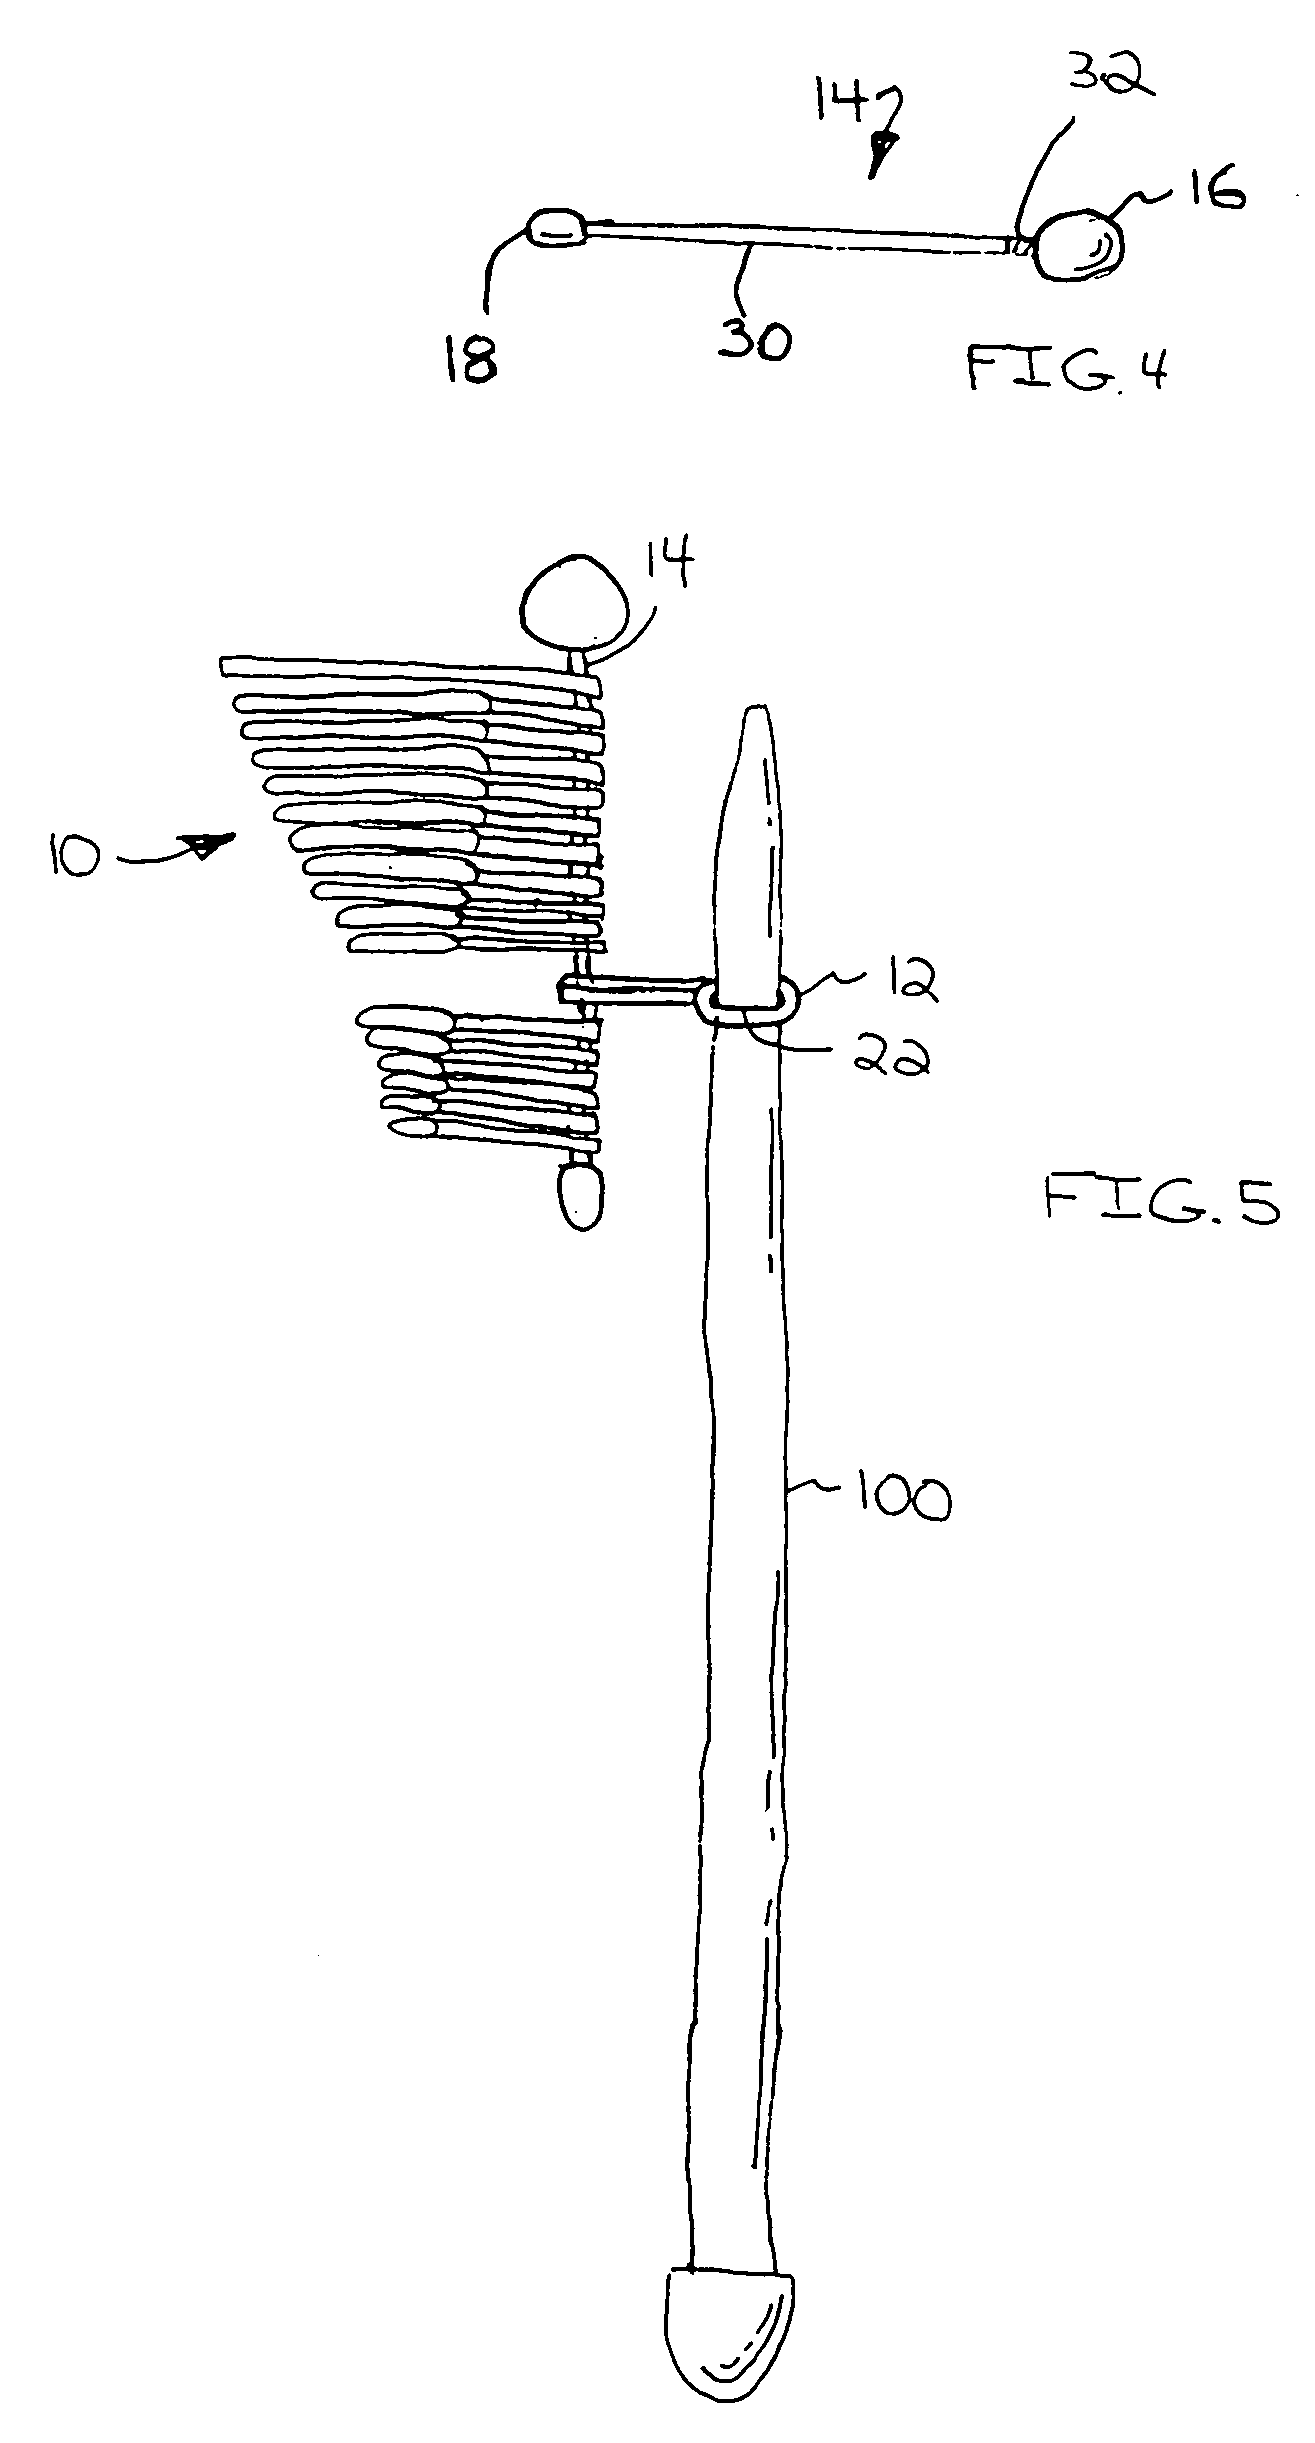 Knitting needle sizing structure and method